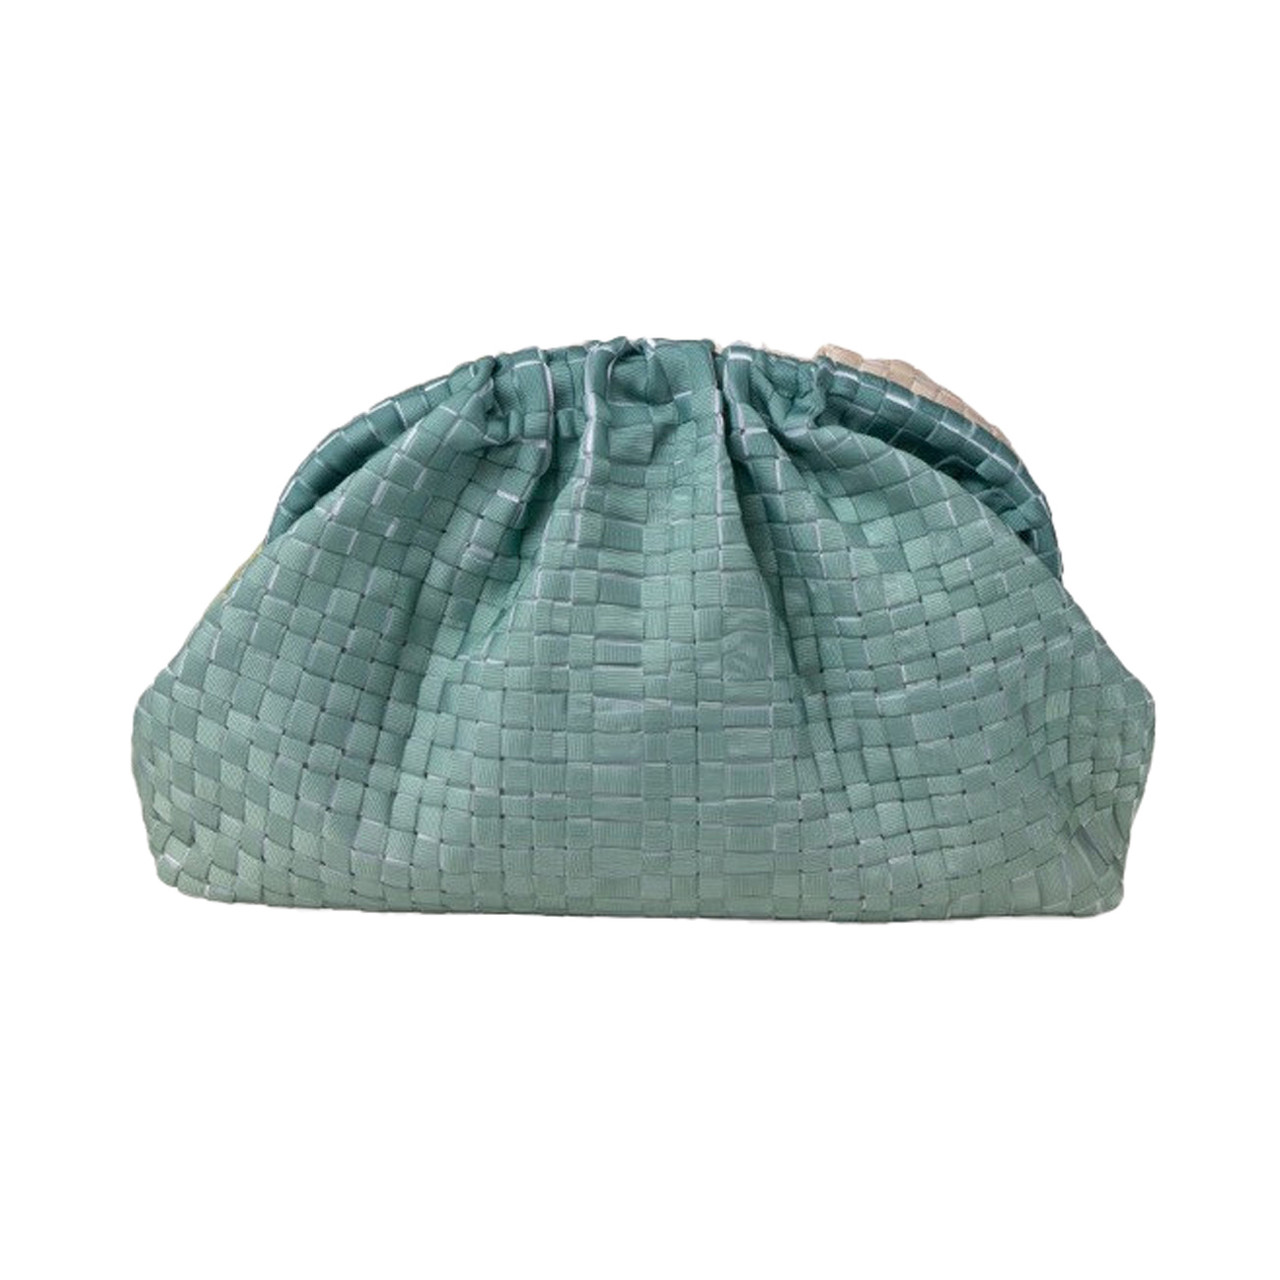 Maria La Rosa Woven Clutch Bag in Aquamarine, tomfoolery